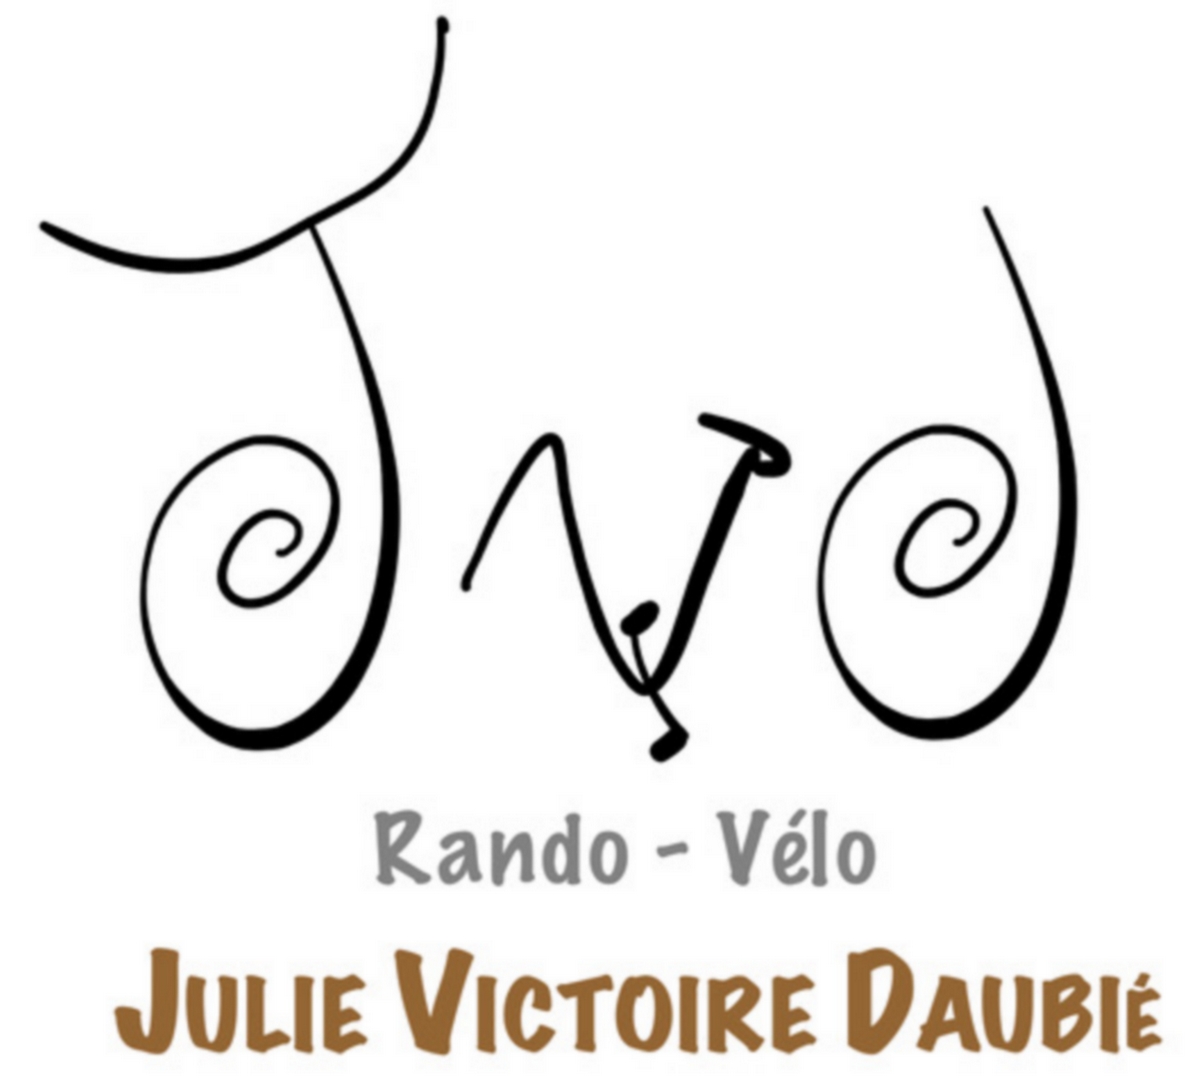 Rando Vélo logo